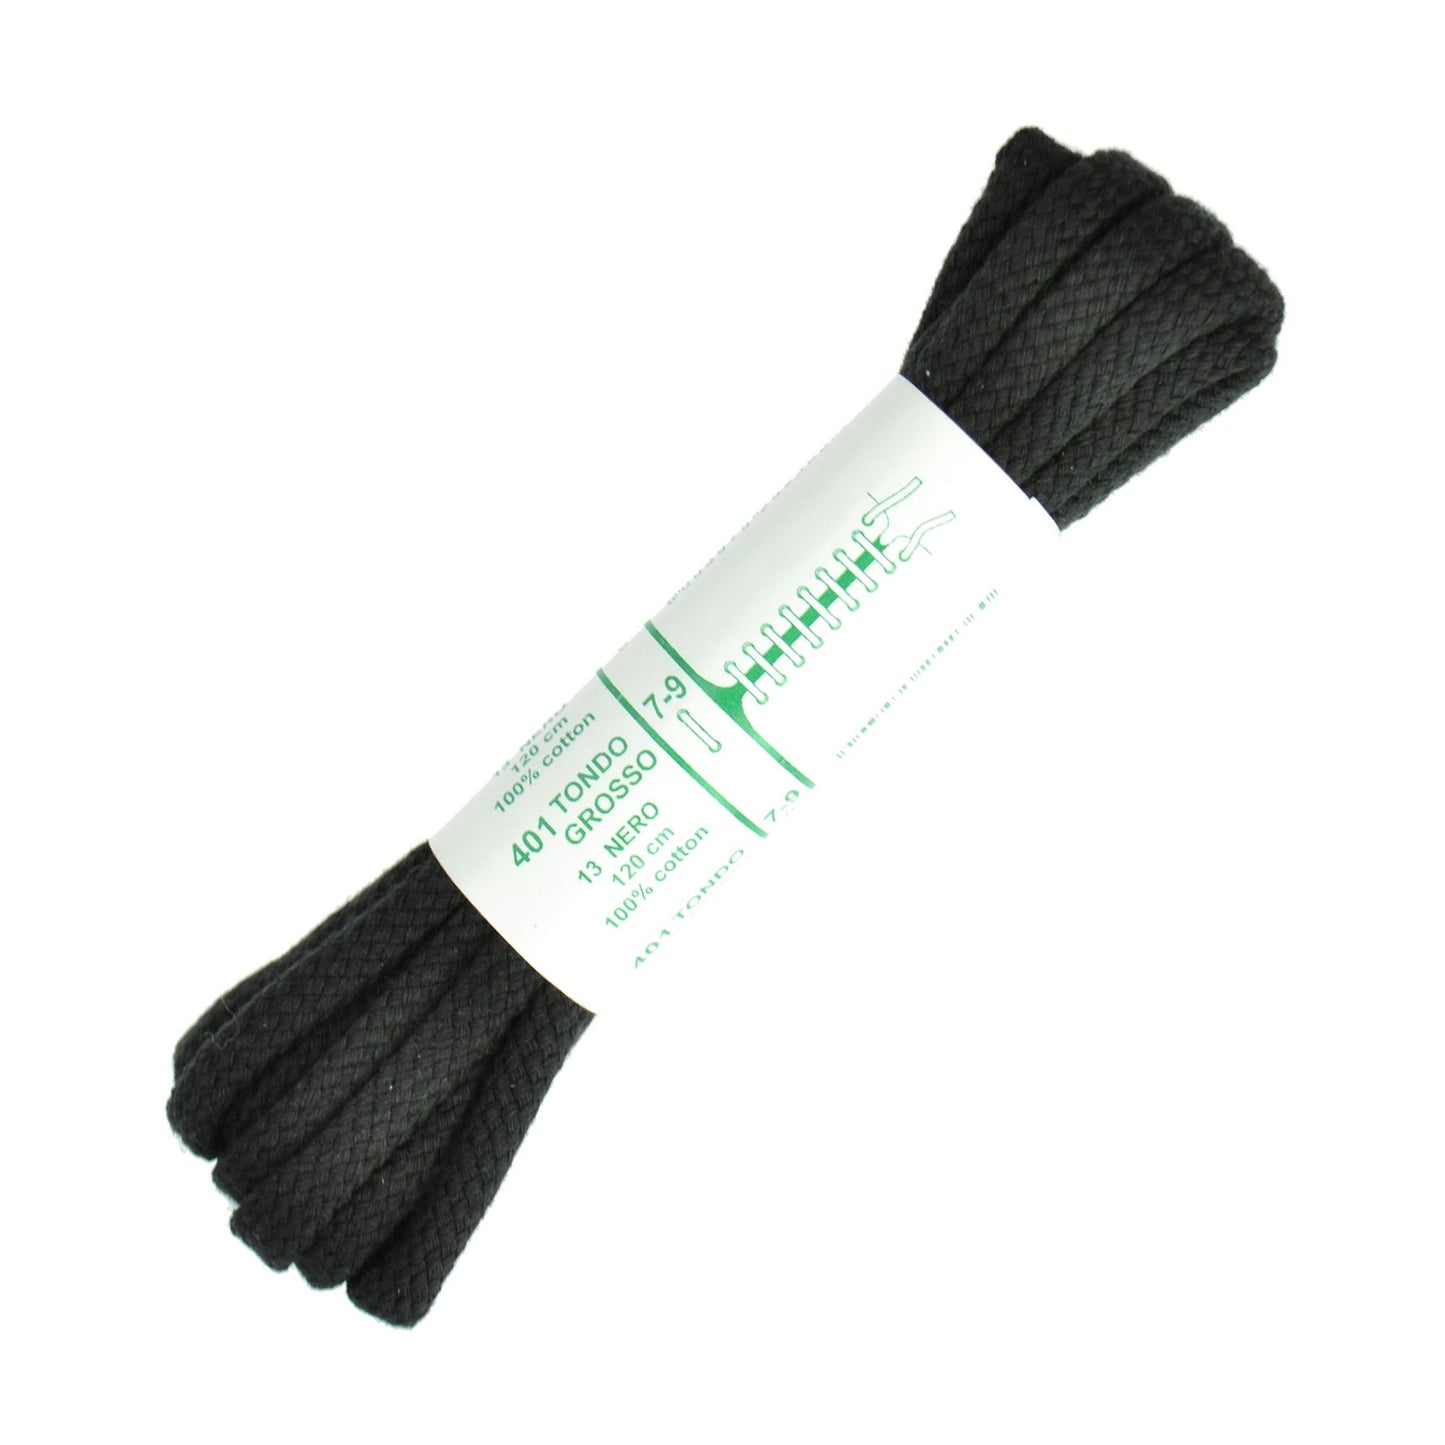 120cm Premium Cord Shoe Laces - Black 6mm